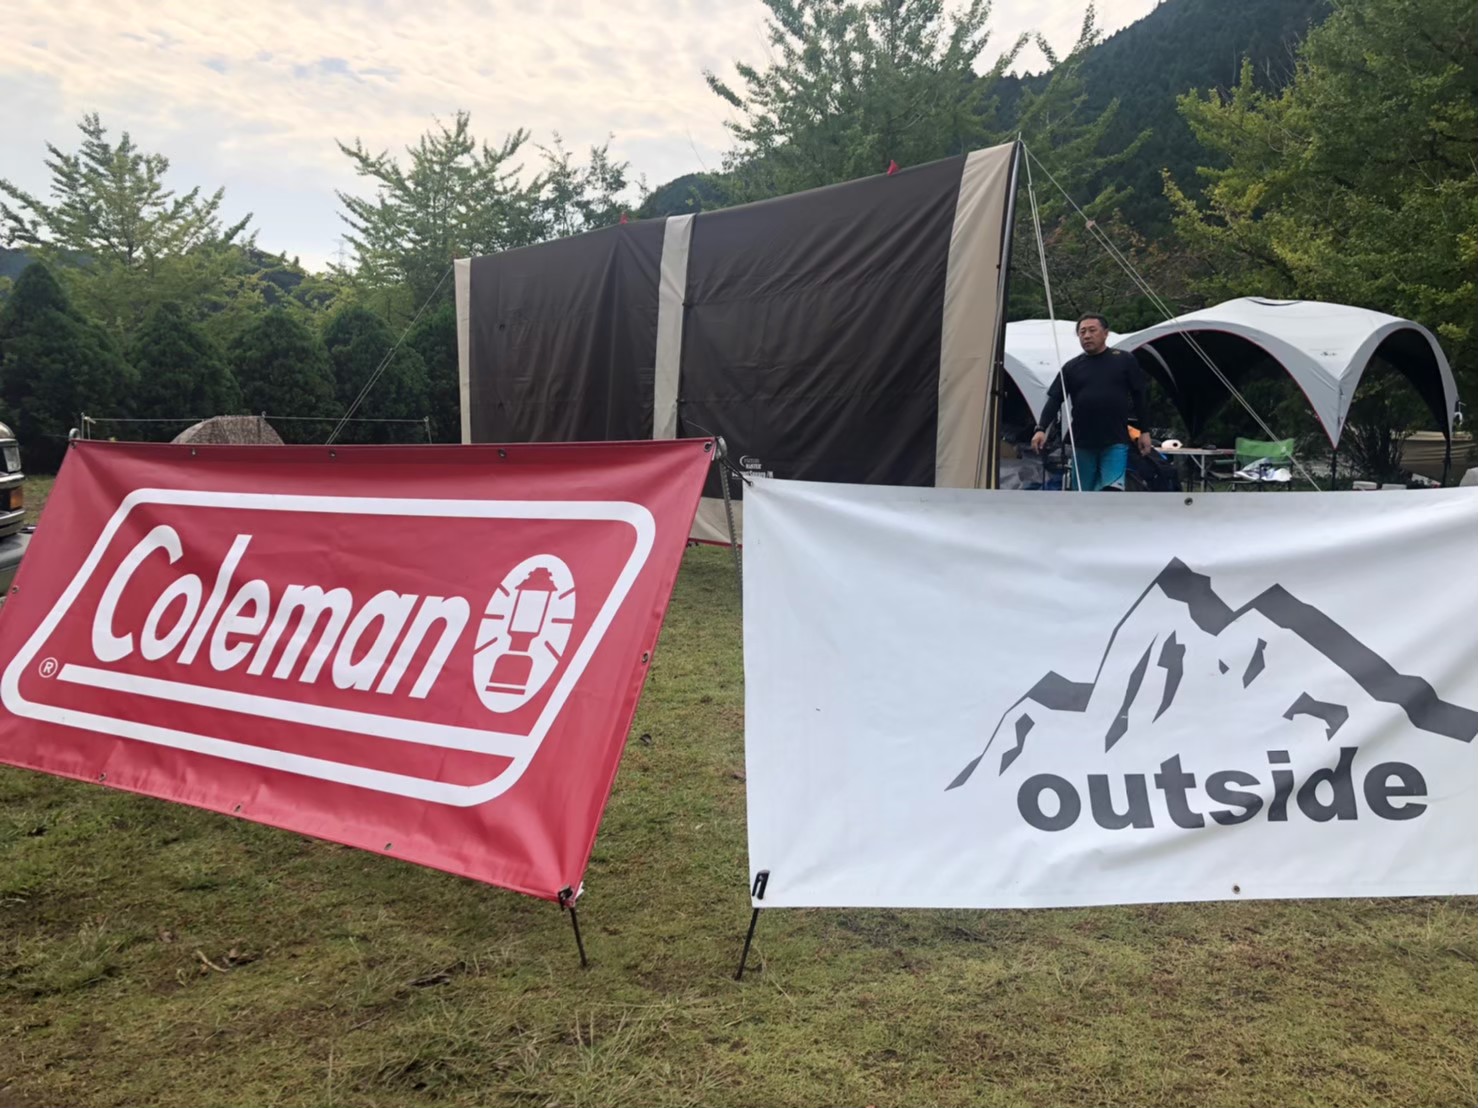 Coleman×outsideTOUR はじめてのキャンプ開催のお知らせ！！